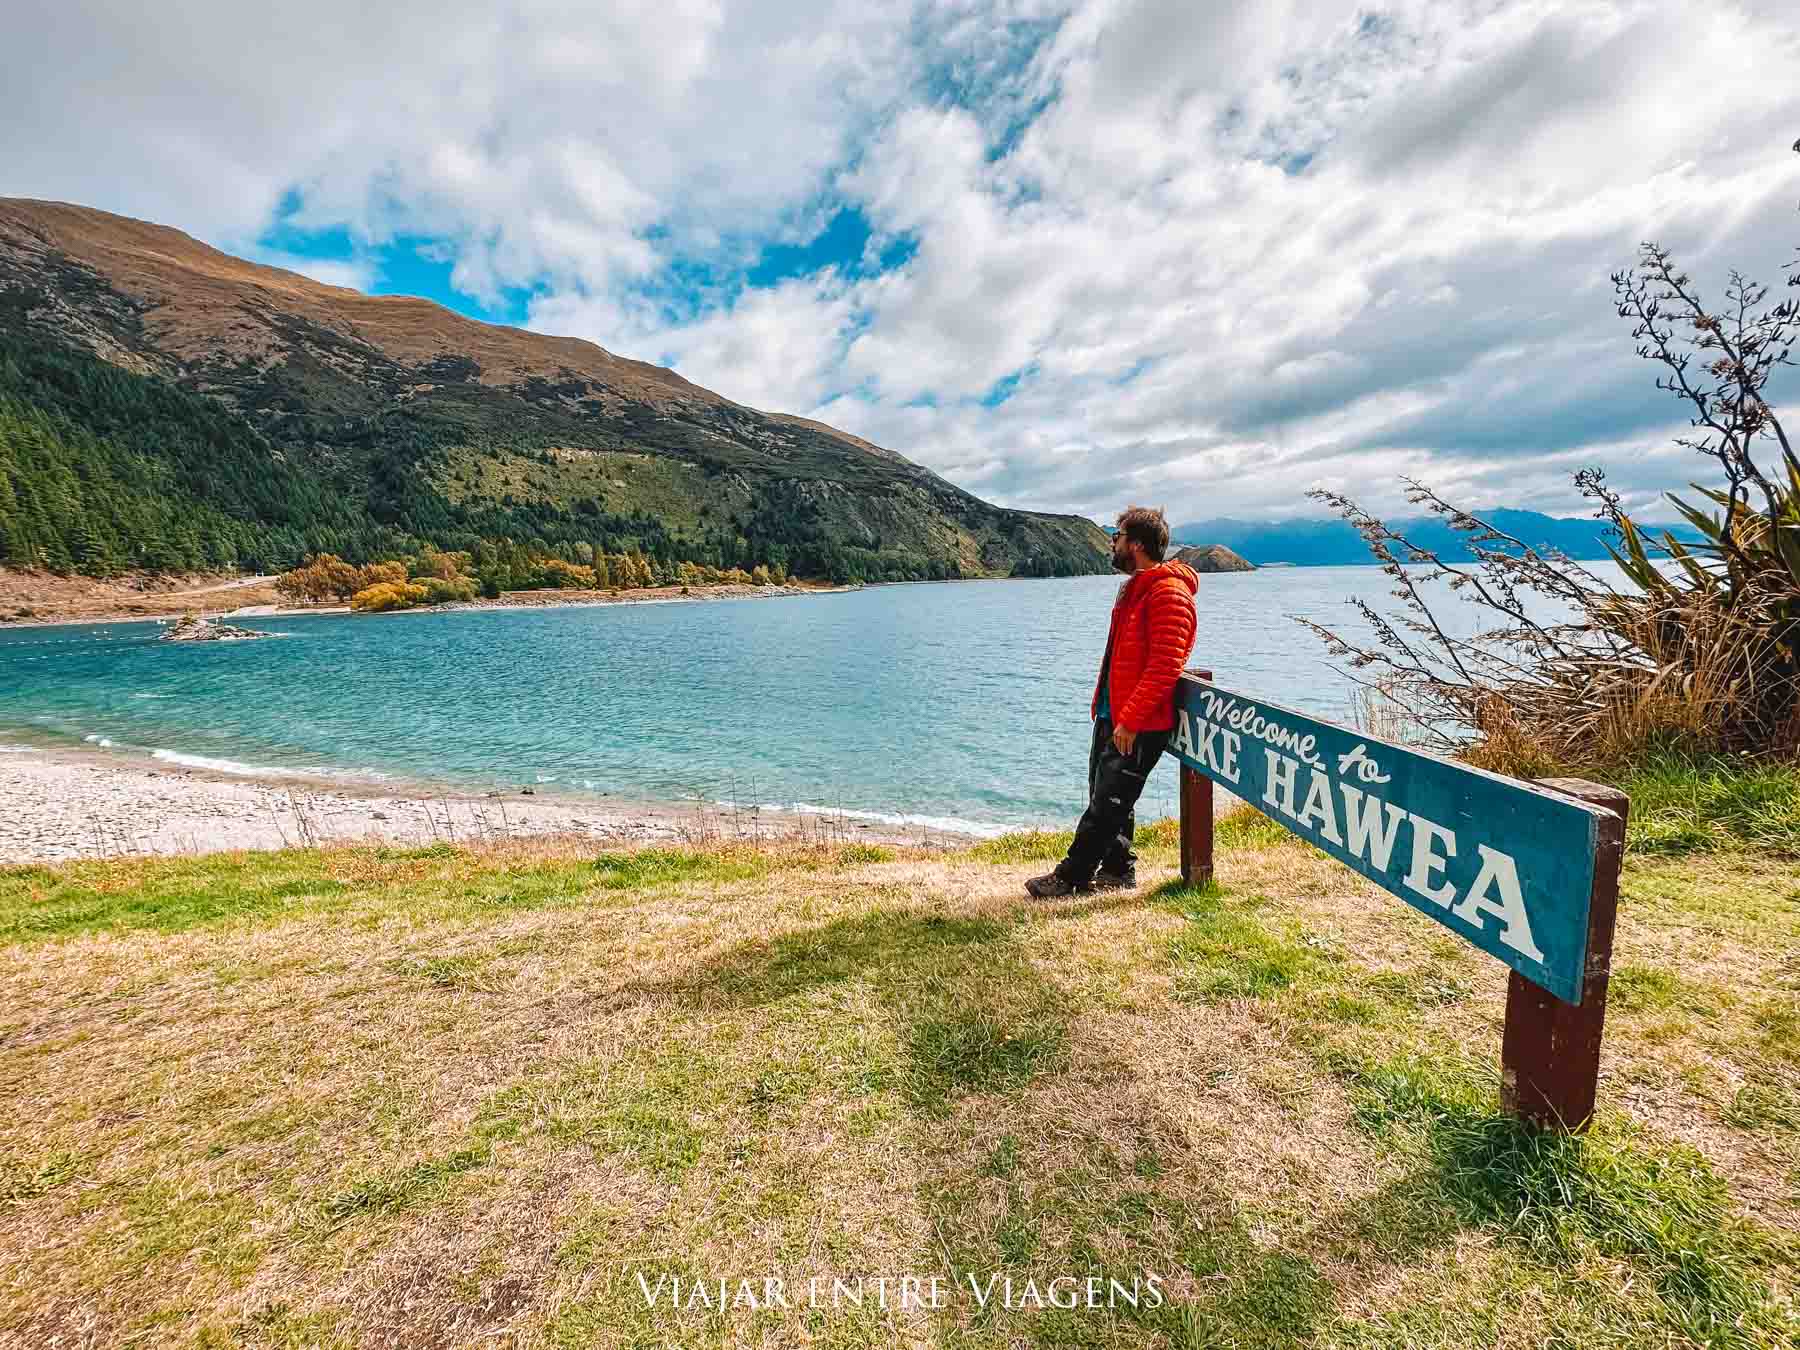 VISITAR WANAKA - O que ver e fazer na Nova Zelândia